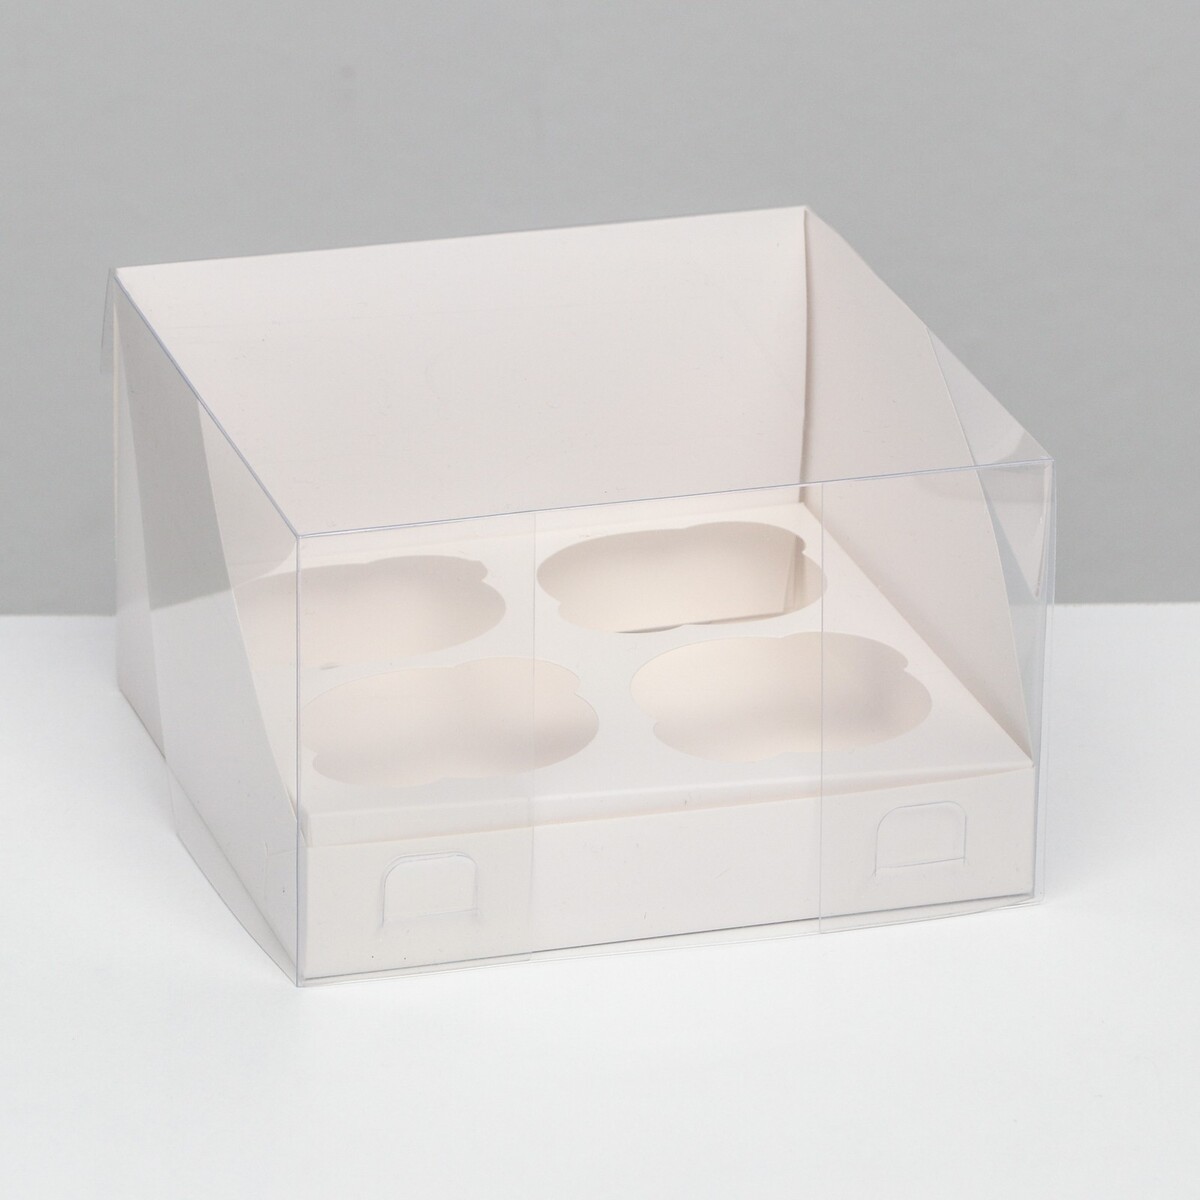 Кондитерская складная коробка для 4 капкейков, белая 16 х 16 х 14 см кондитерская складная коробка для 4 капкейков 16 х 16 х 10 серебро